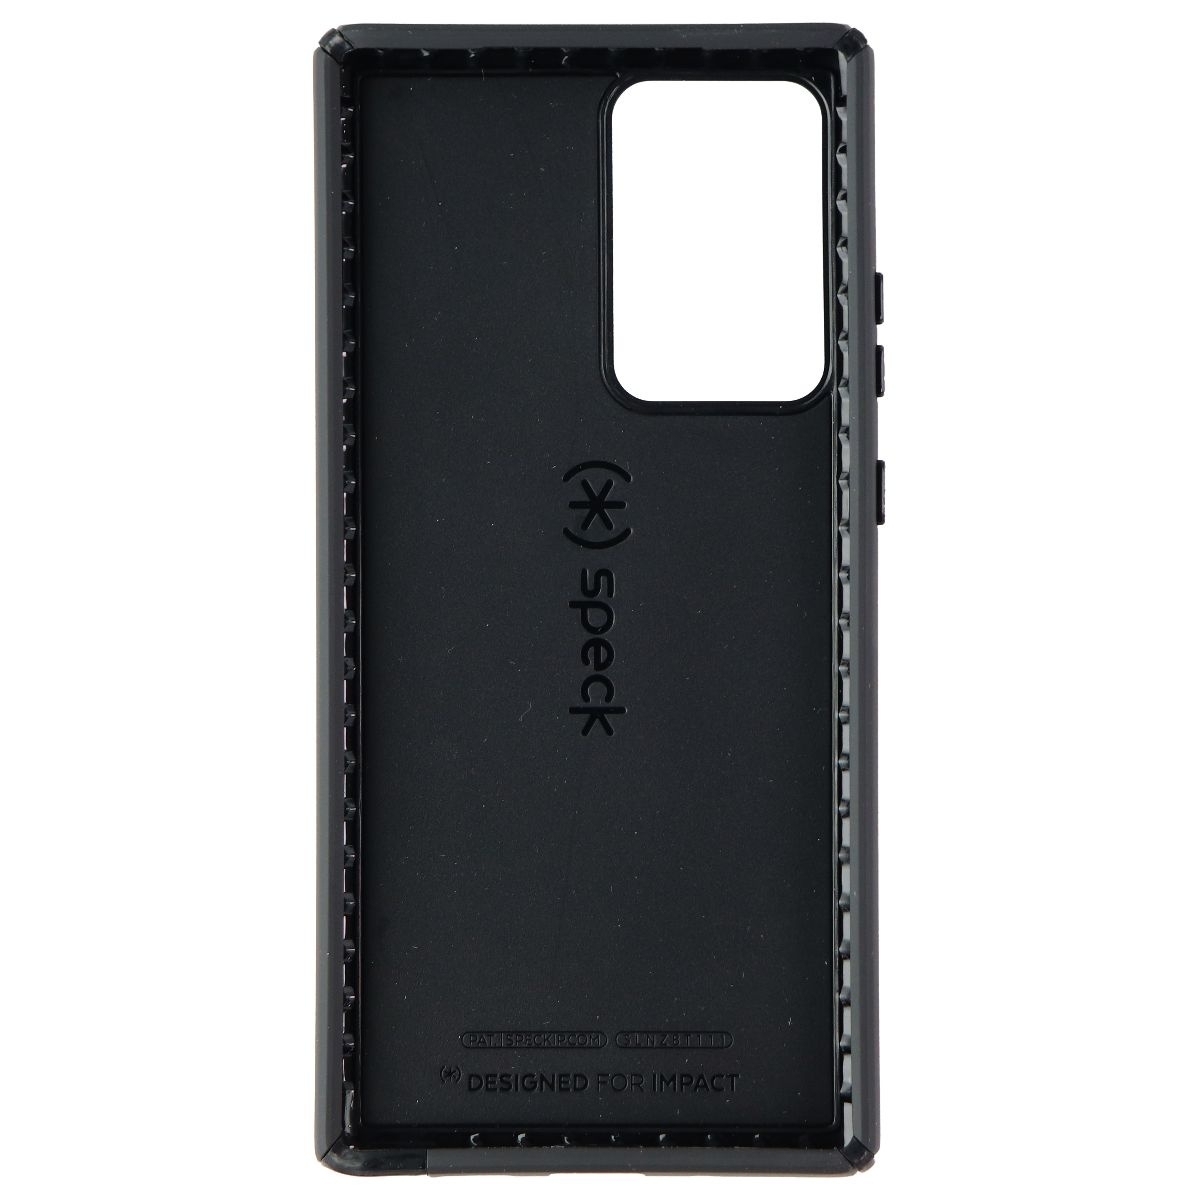 Speck Presidio2 Pro Series Case For Samsung Note20 Ultra - Black/Black/White